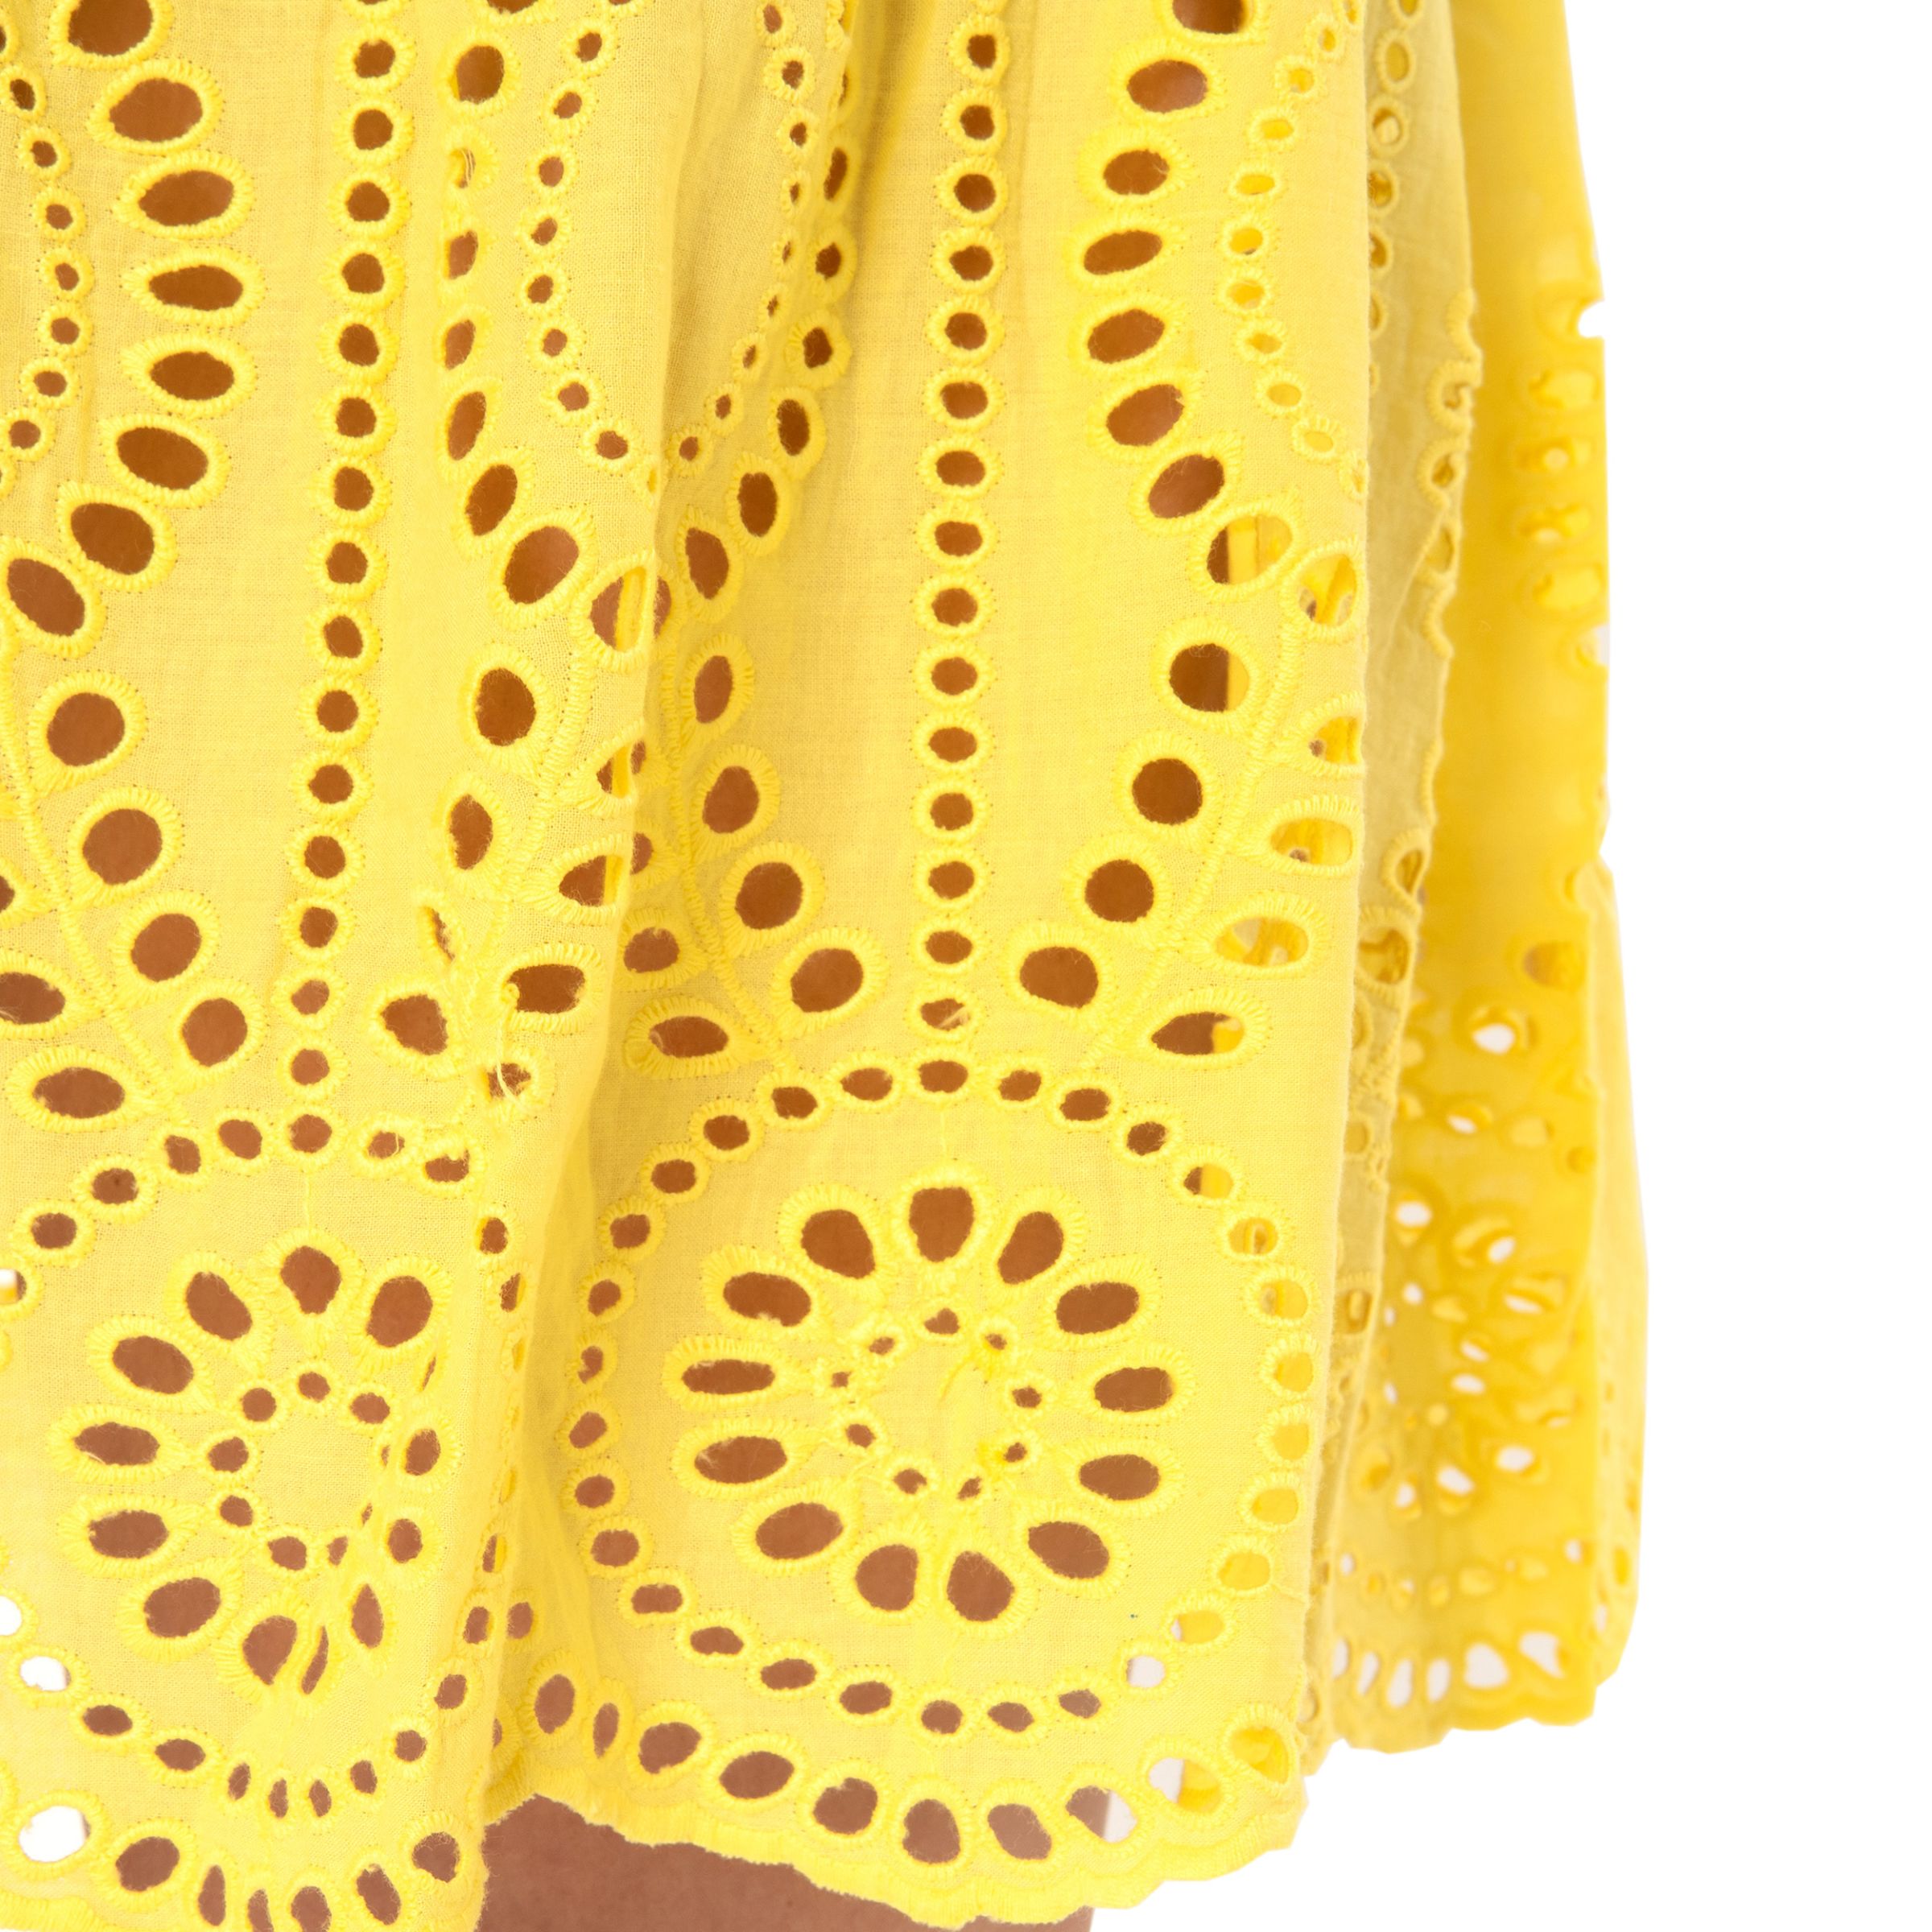 Платье Melissa Odabash ASHLEY желтое